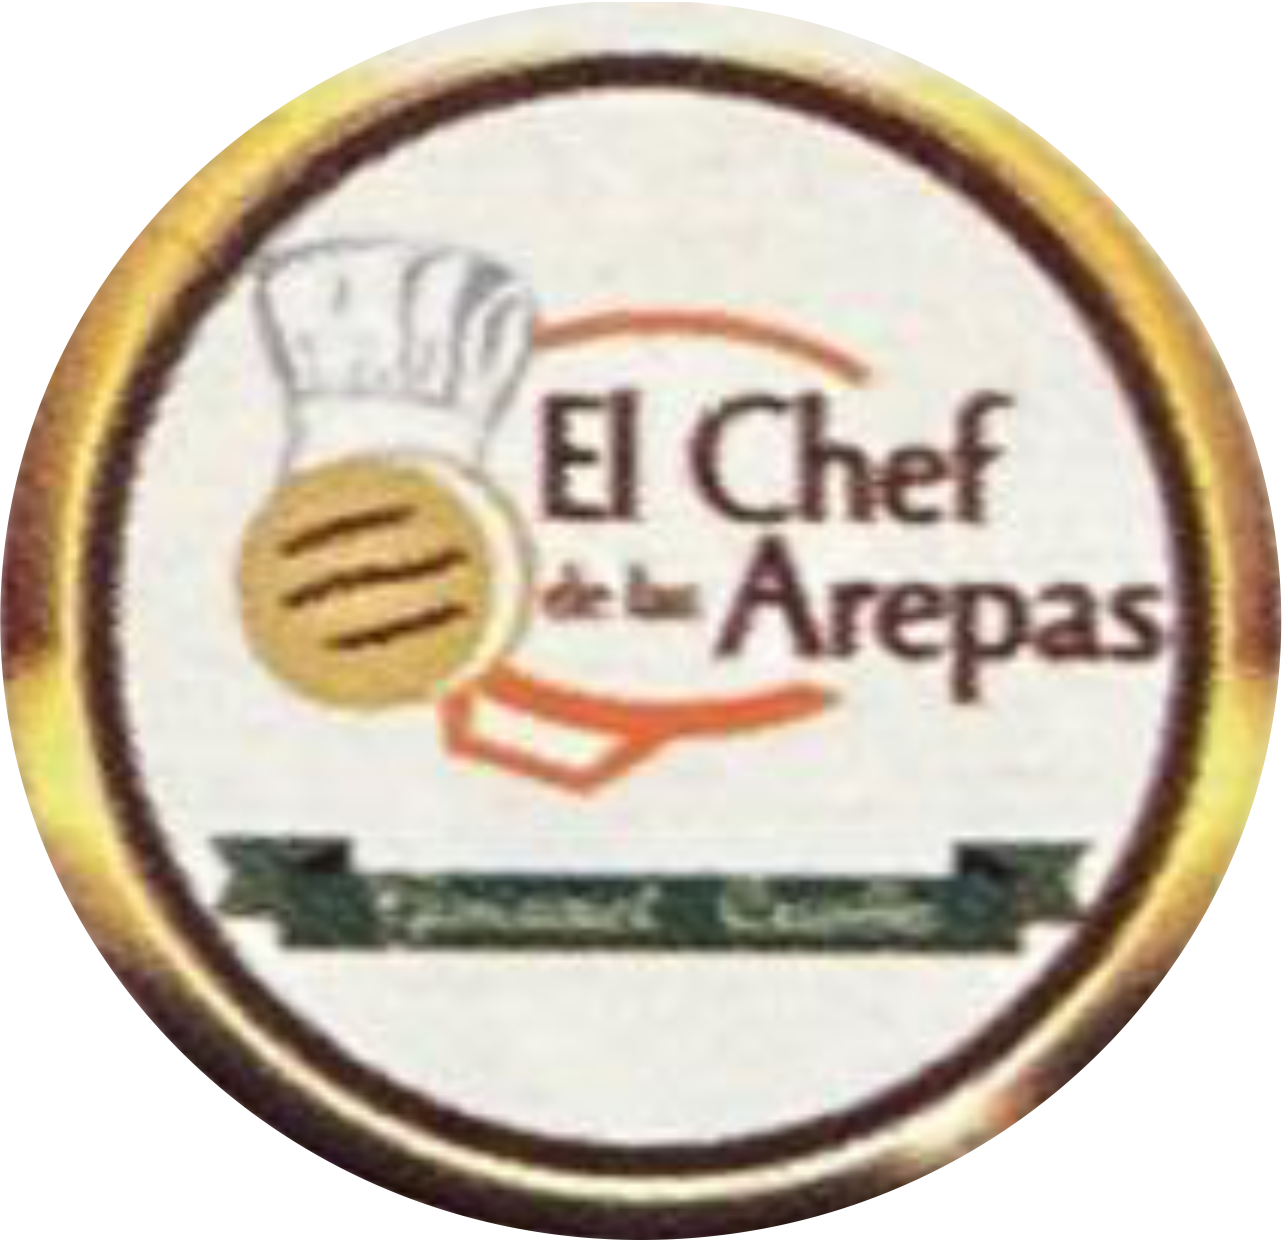 El Chef De Las Arepas & Mas